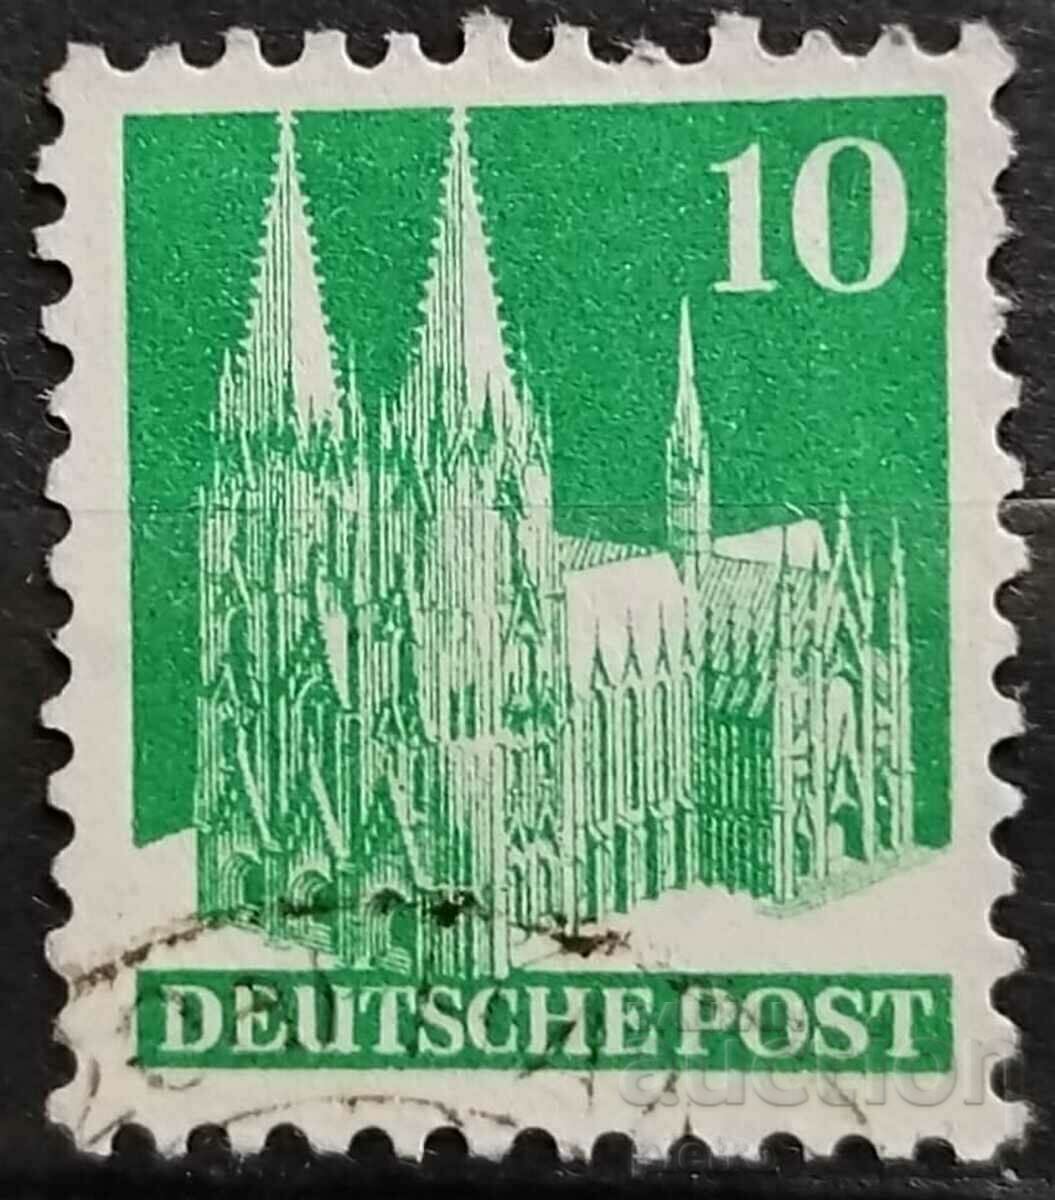 Χρησιμοποιείται γερμανικό γραμματόσημο: αμερικανικό και βρετανικό..